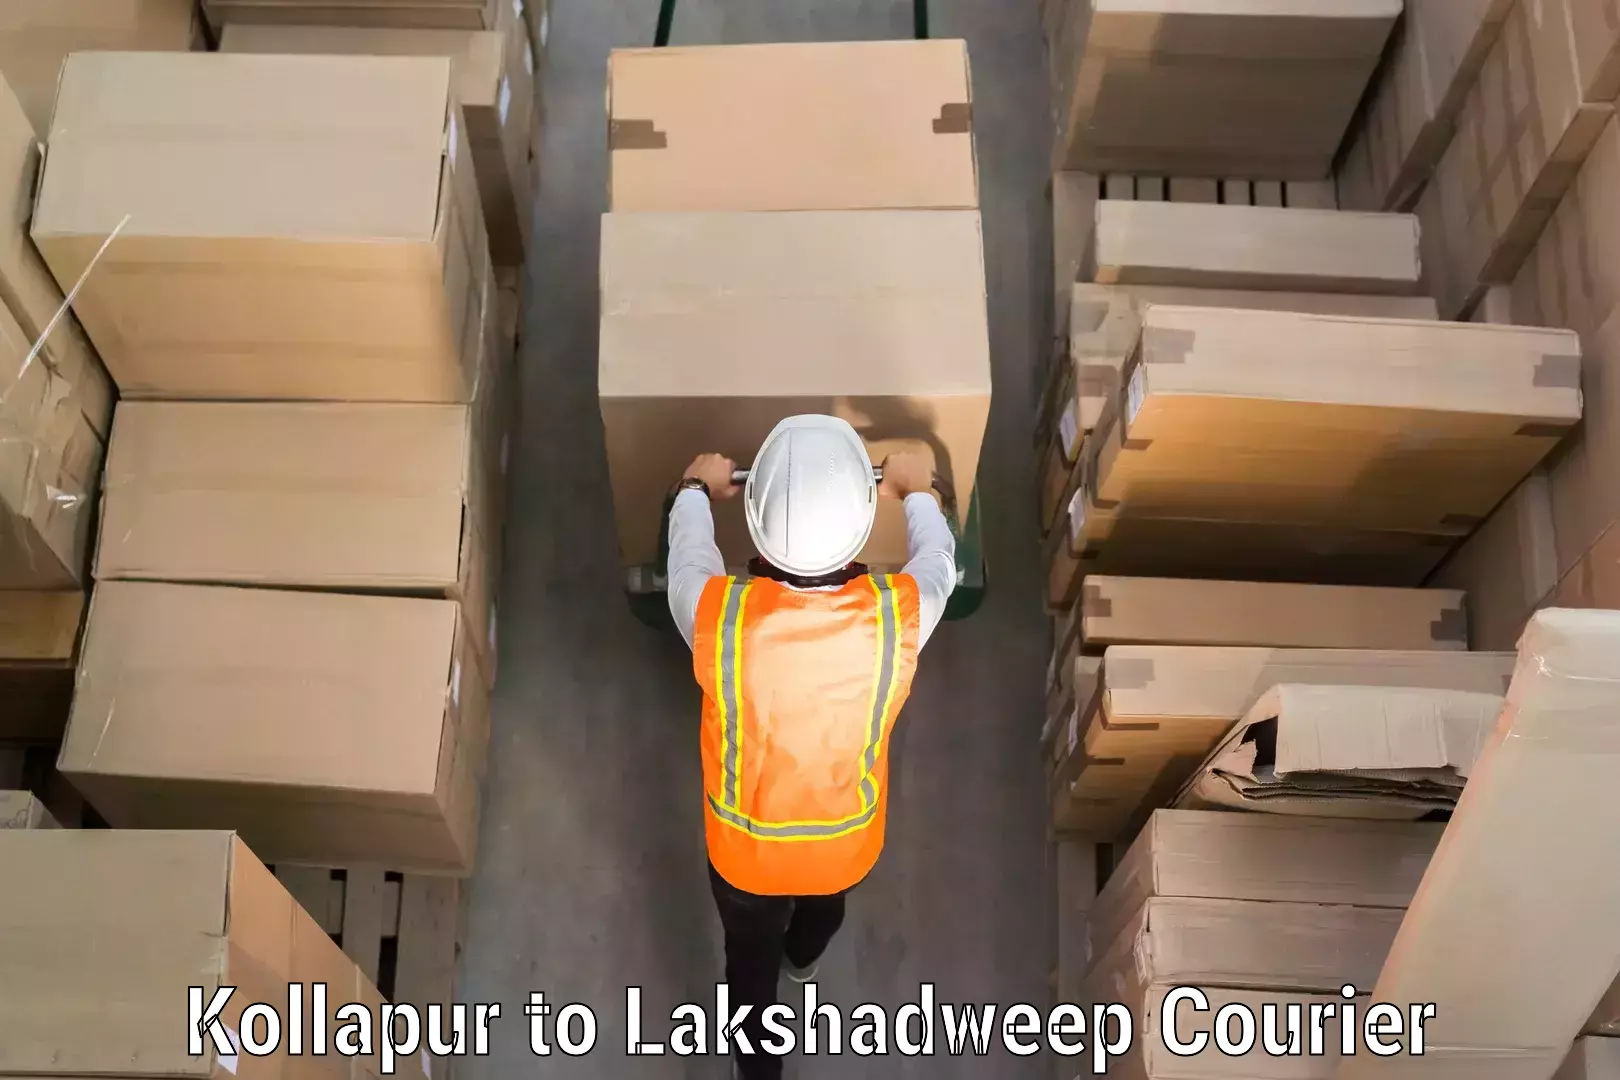 Emergency baggage service Kollapur to Lakshadweep